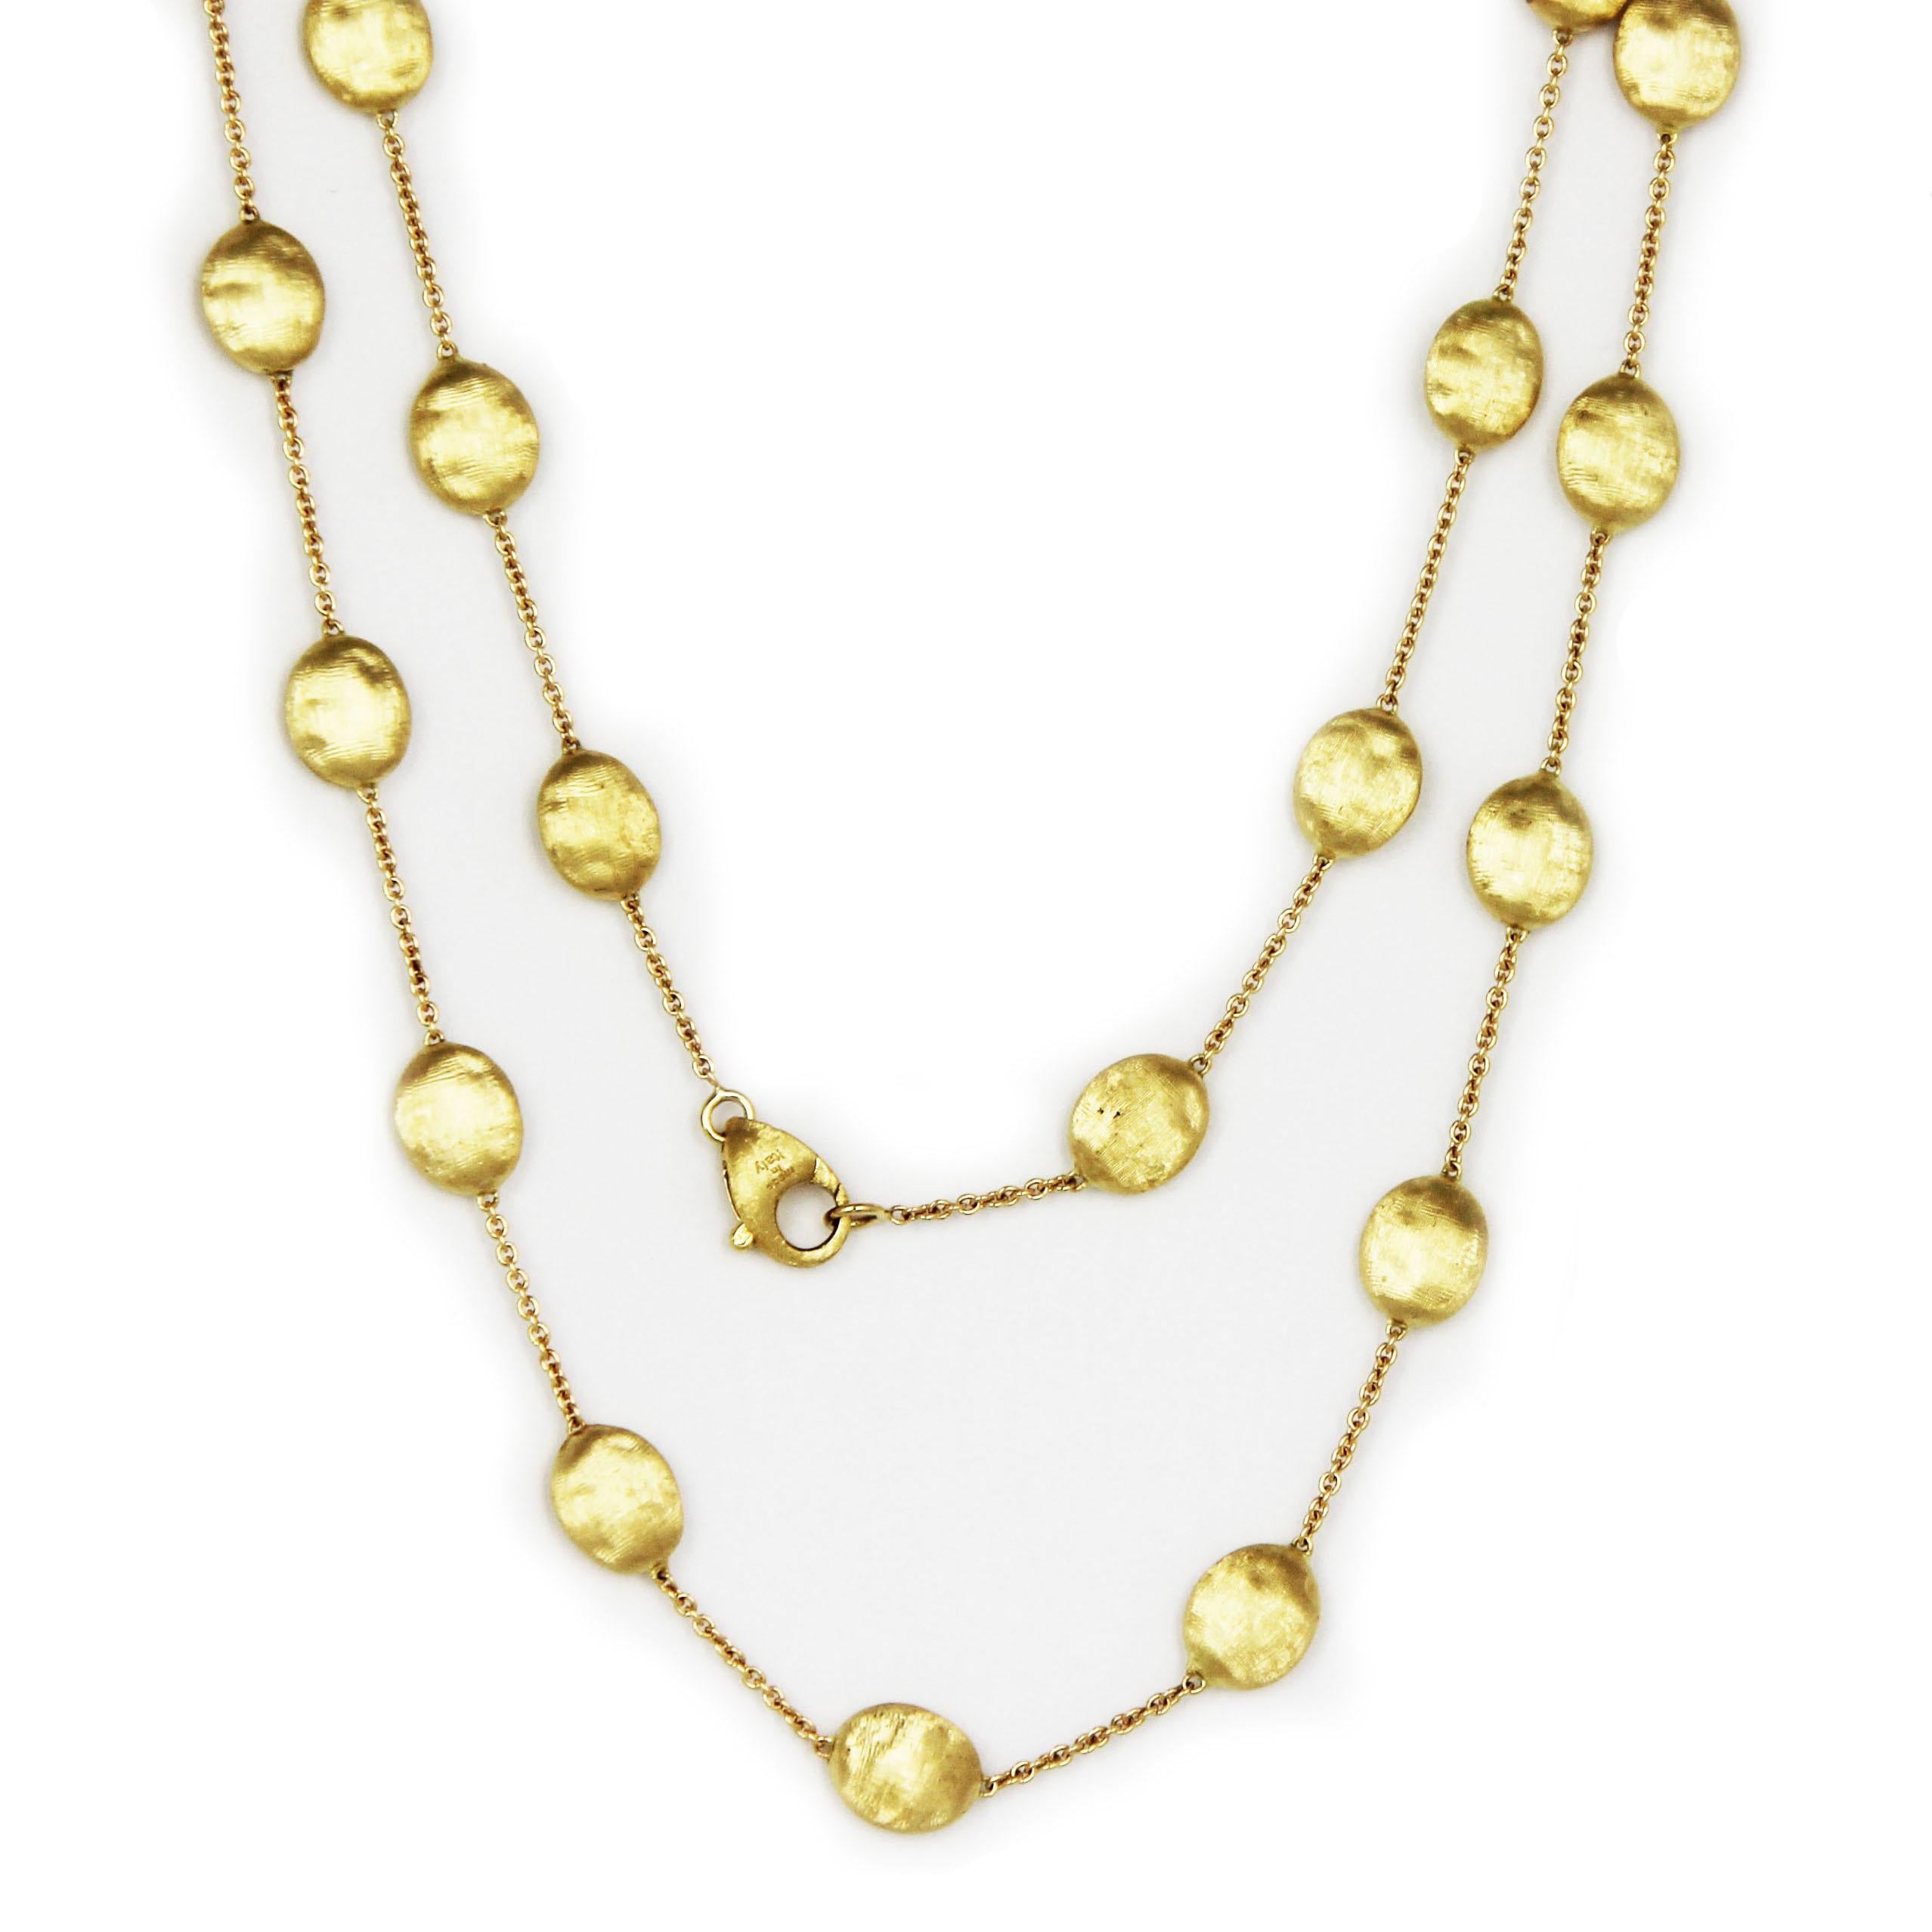 Contemporary Marco Bicego Siviglia 18 Carat Yellow Gold Long Necklace